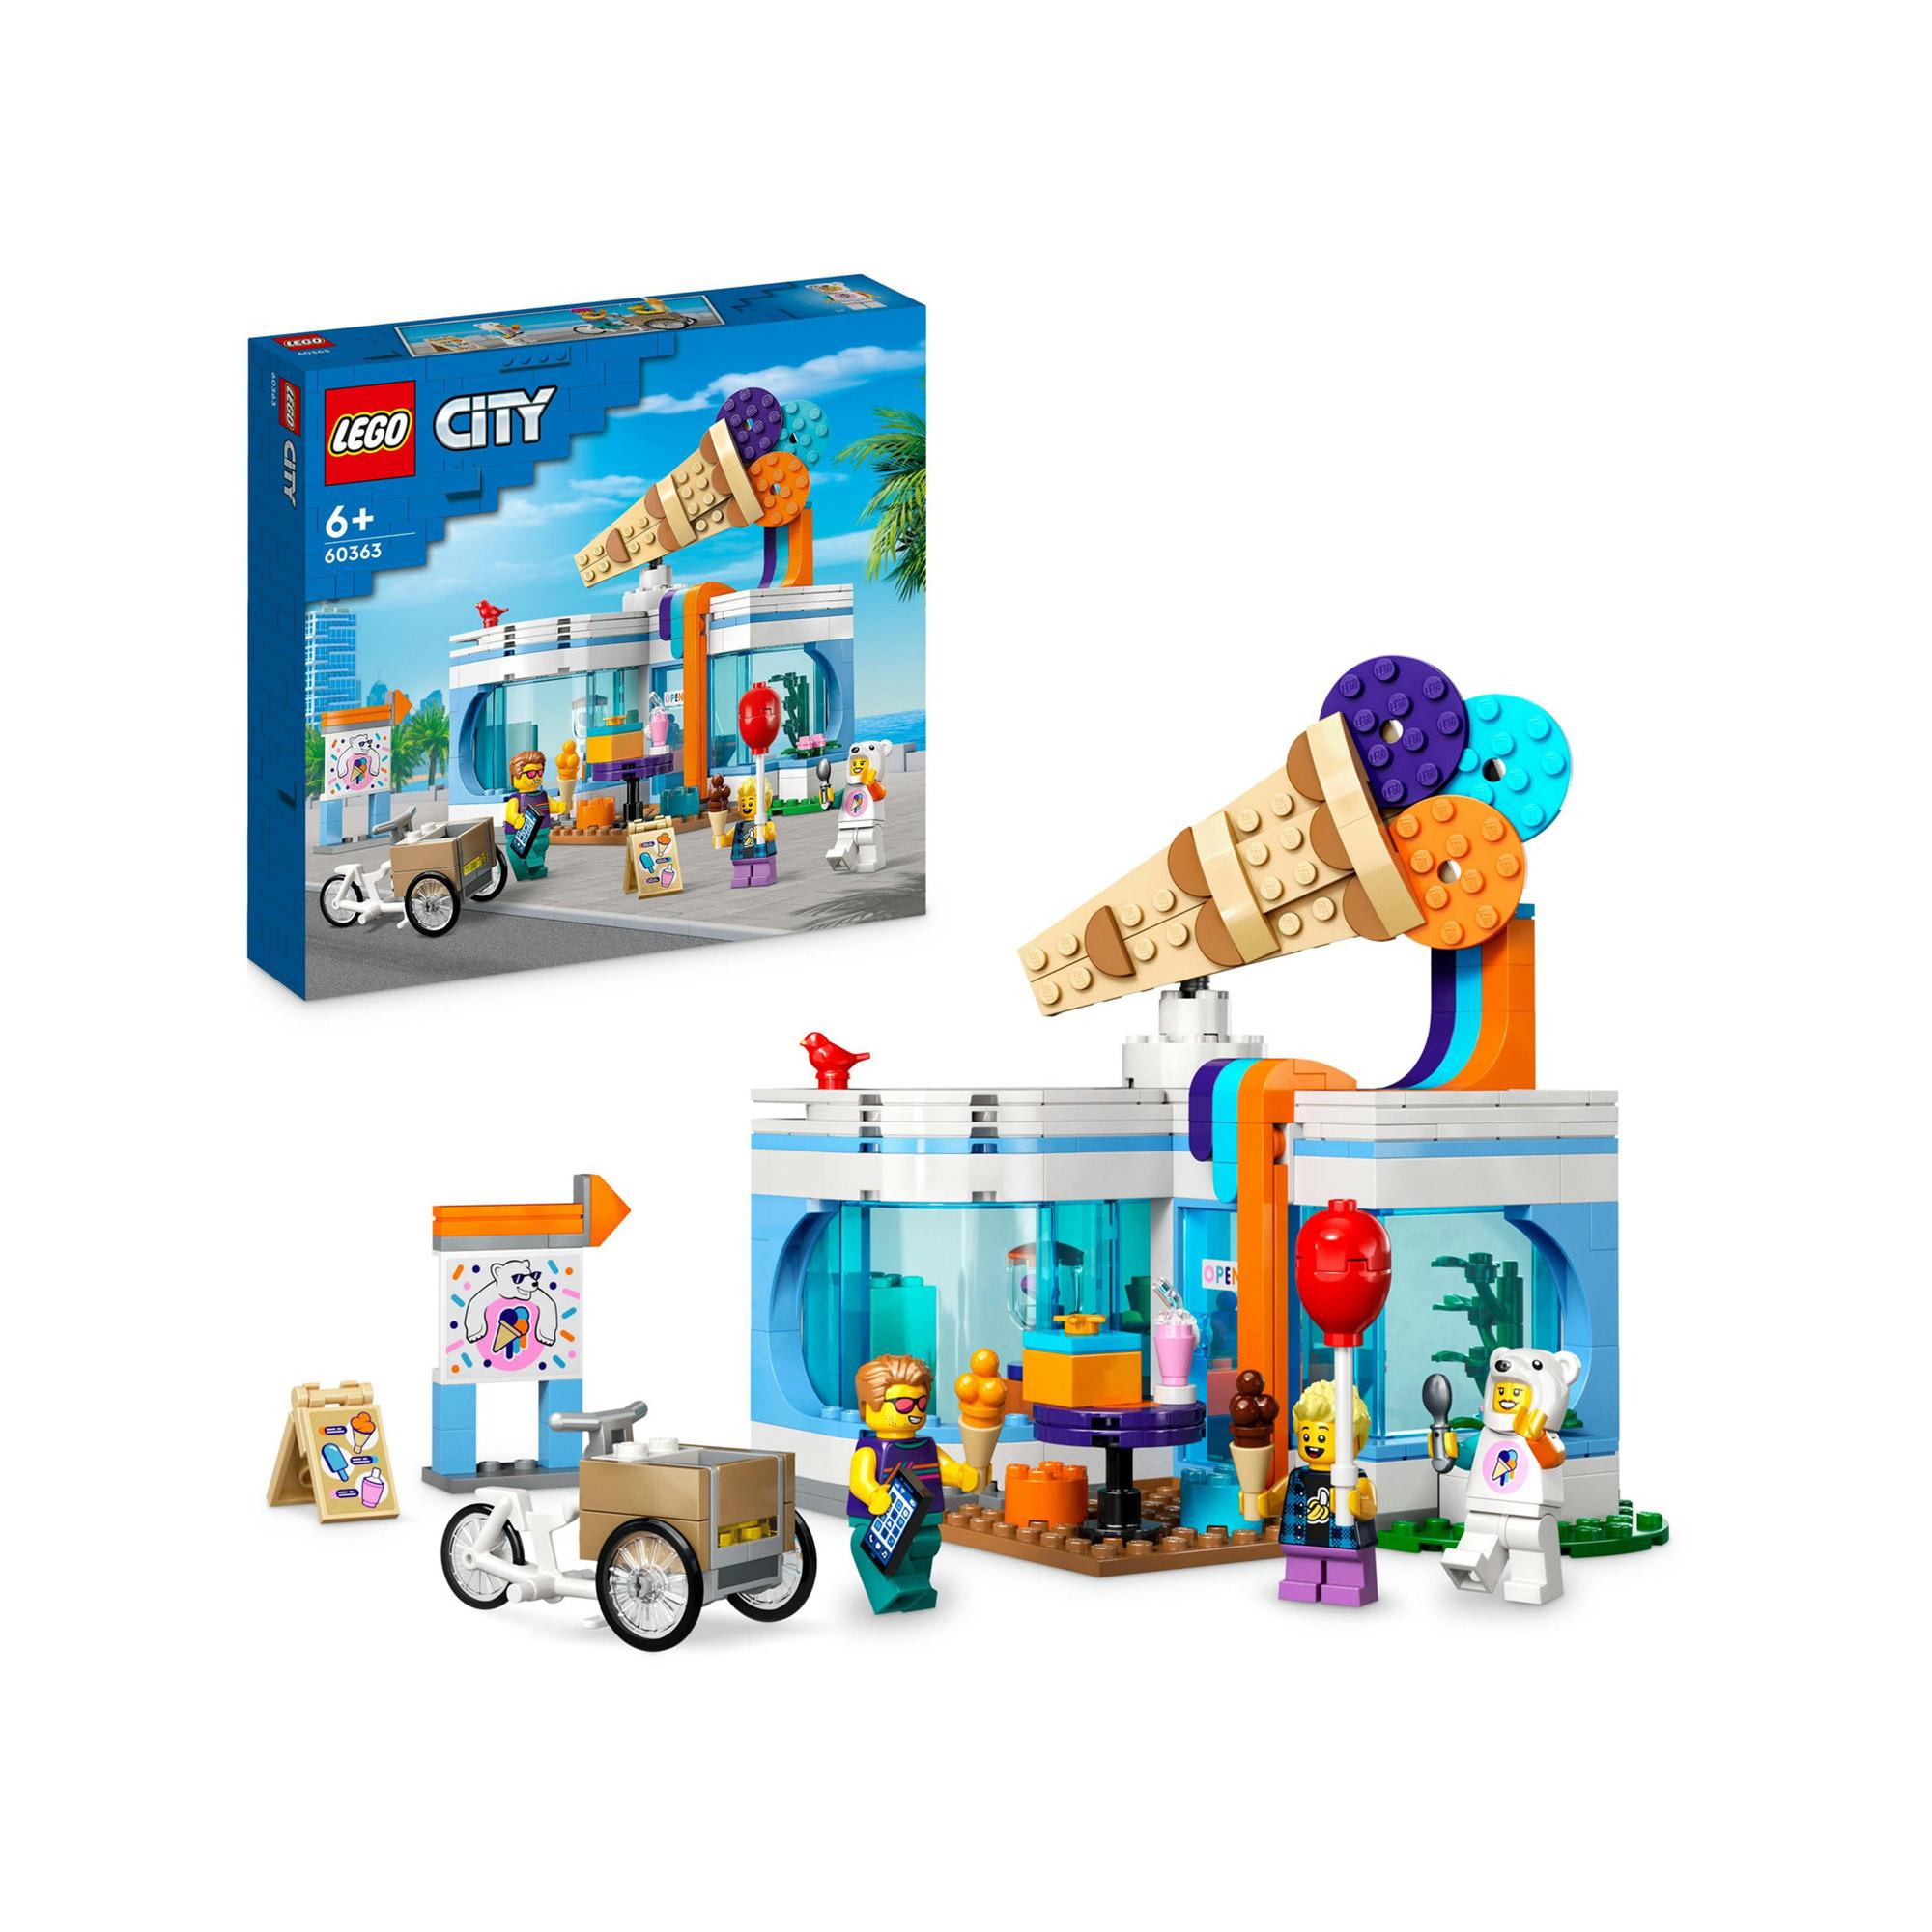 LEGO City Le commissariat de Police 60246 / ENFANT Fille Garçon